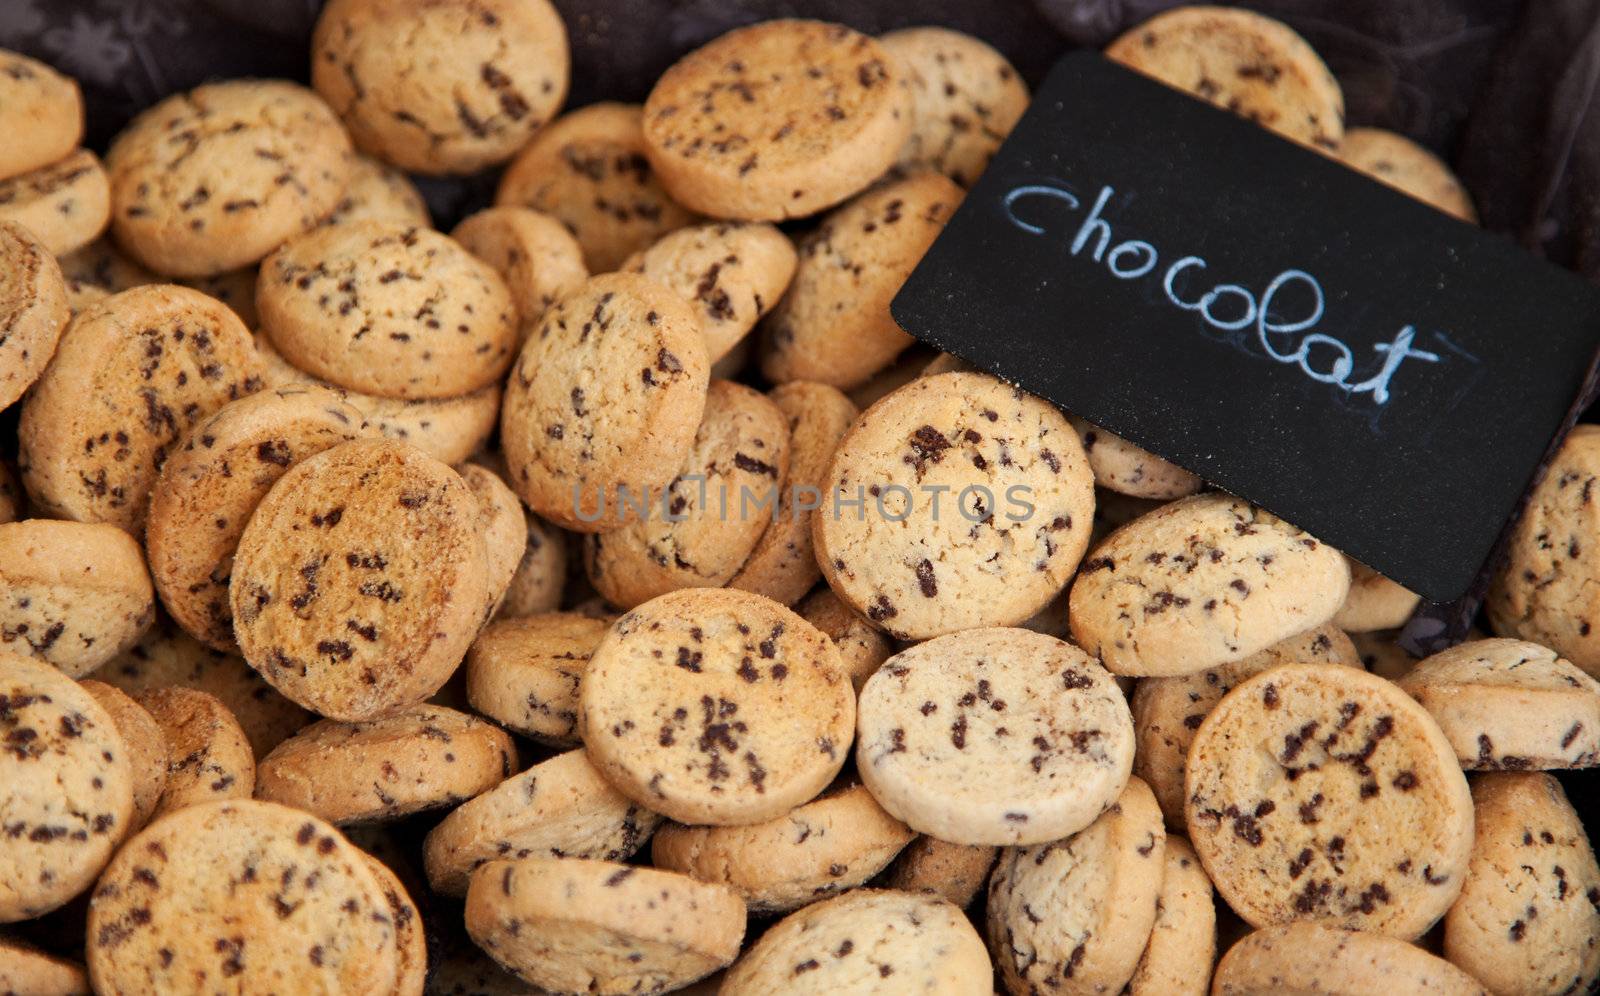 Chocolate cookies by kaarsten